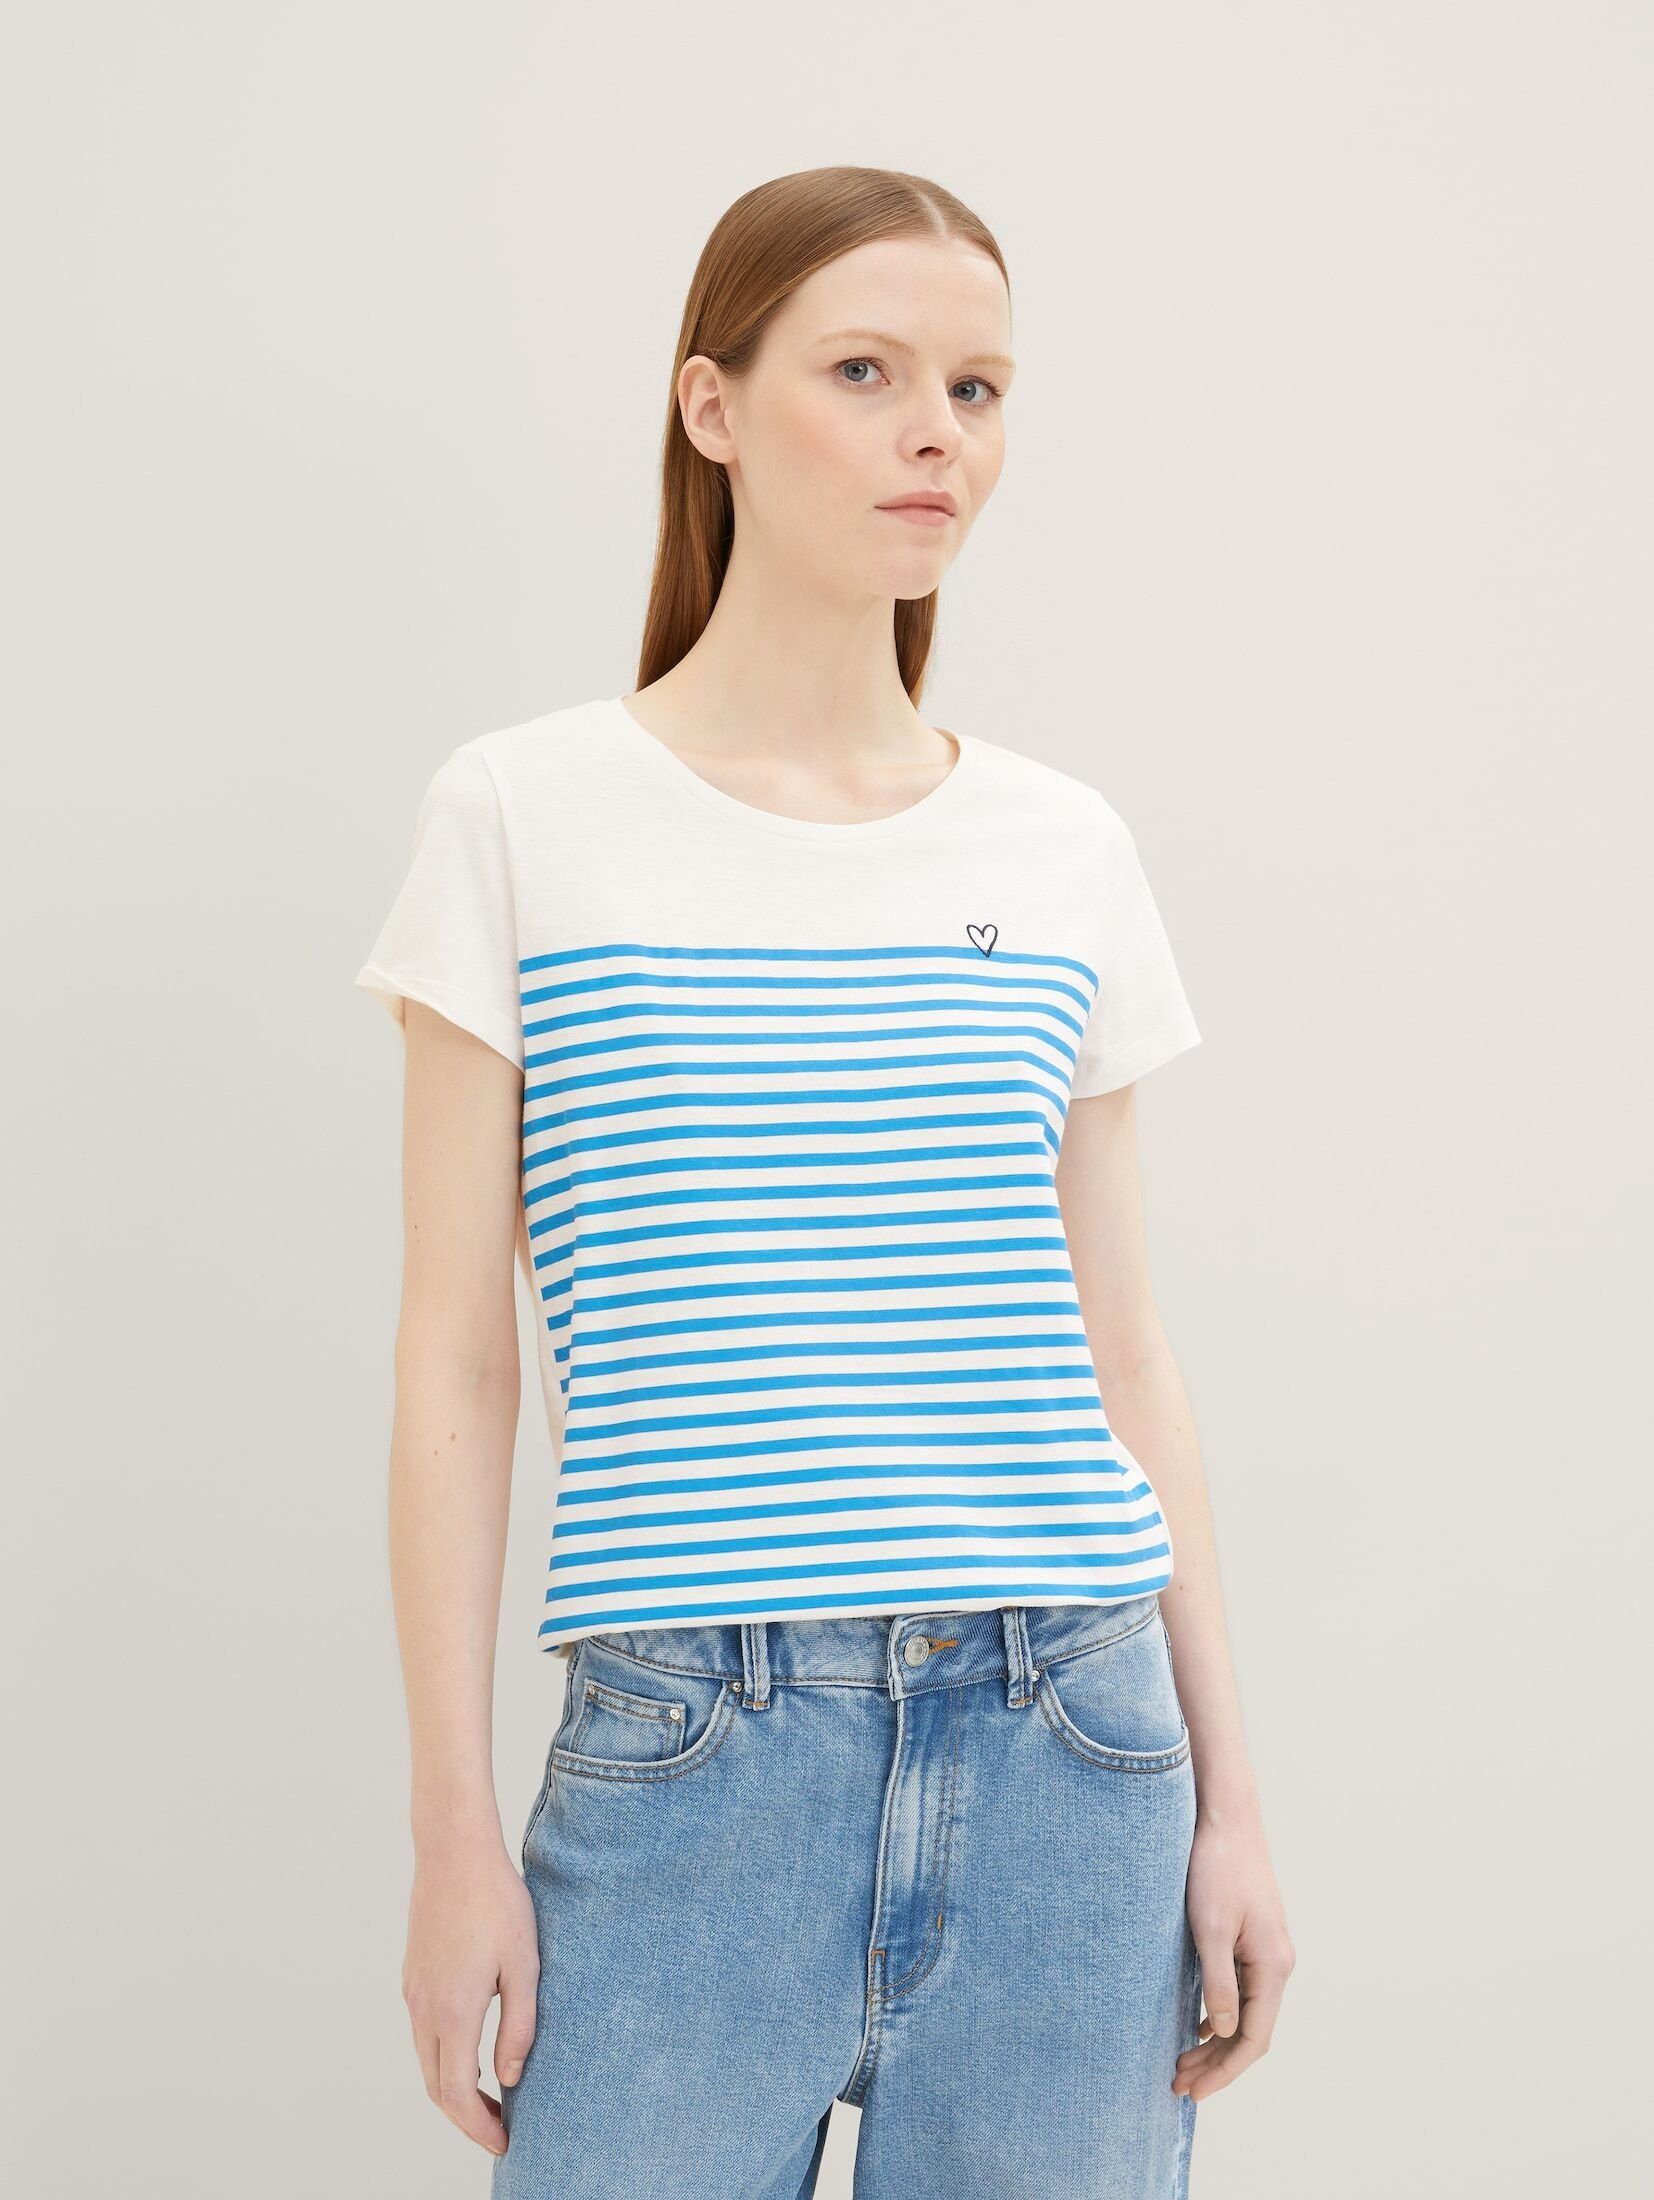 TOM blue mid mit Stickerei stripe T-Shirt TAILOR Gestreiftes Langarmshirt white Denim kleiner